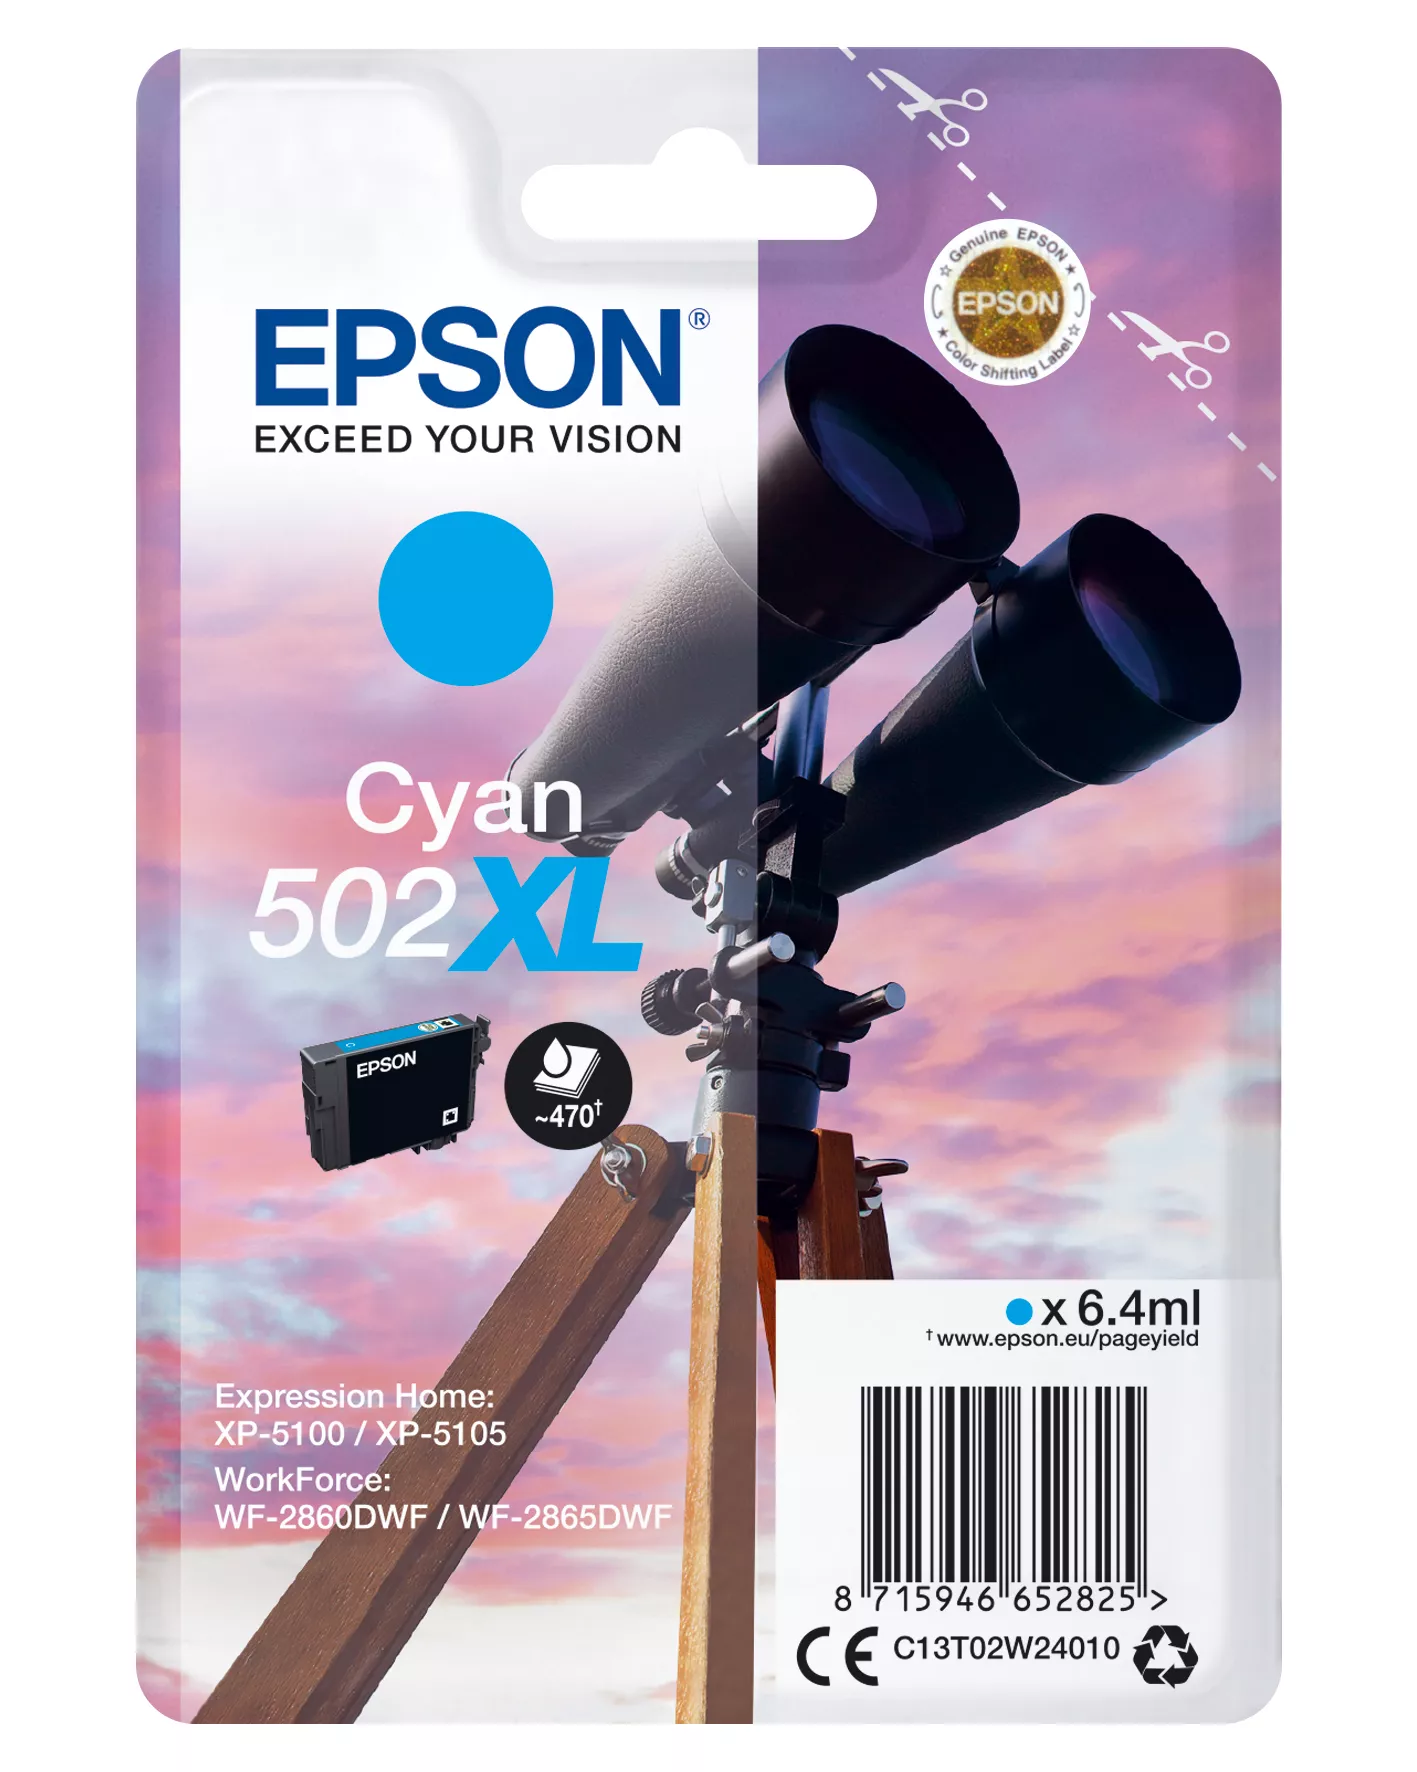 Revendeur officiel EPSON Singlepack Cyan 502XL Ink